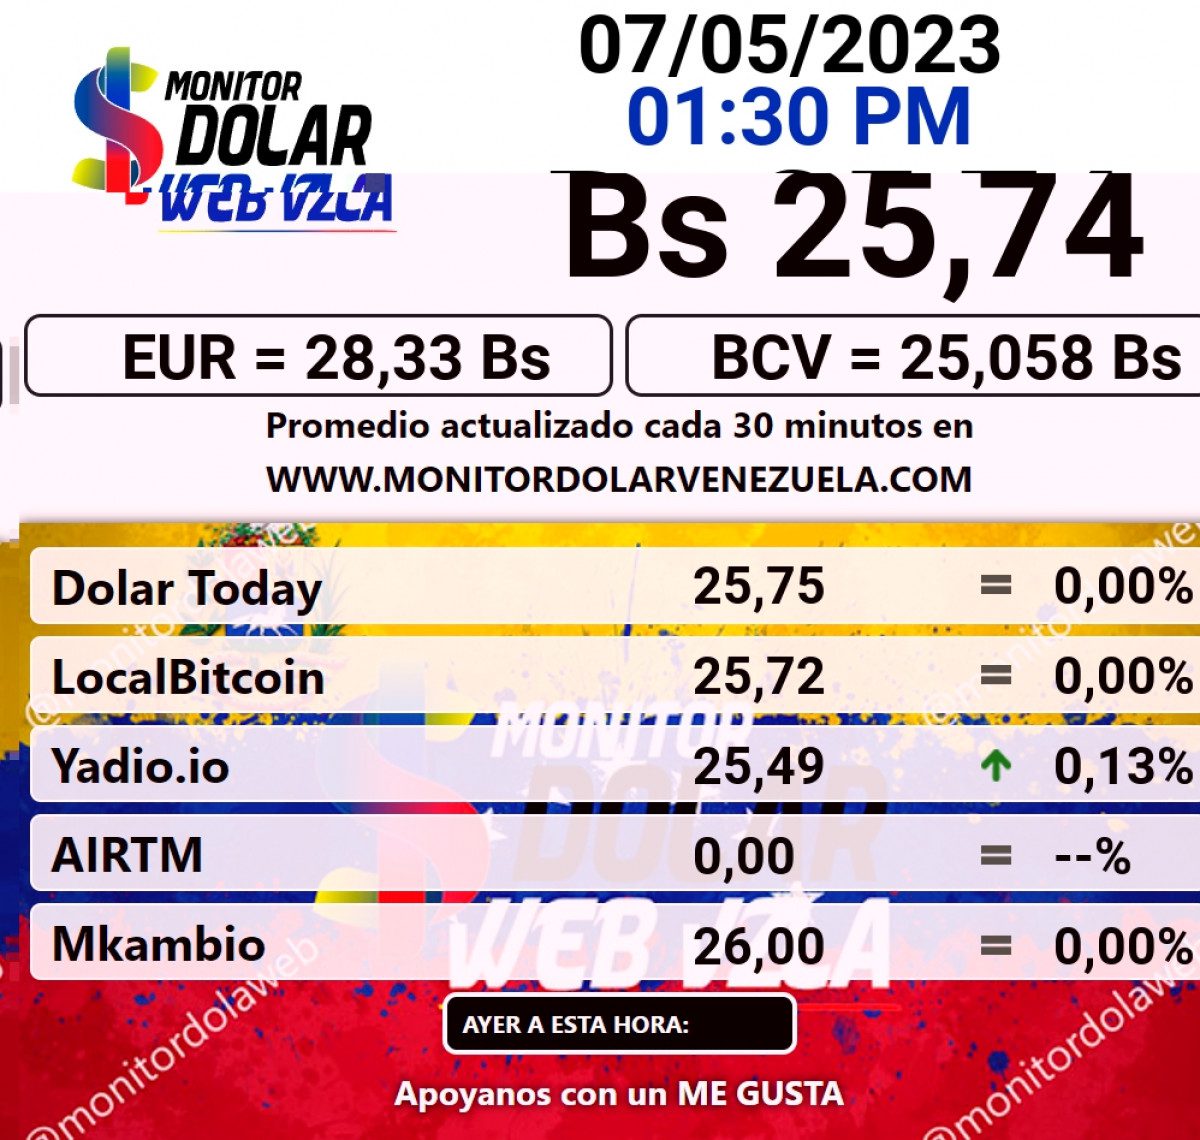 dolartoday en venezuela precio del dolar este domingo 7 de mayo de 2023 laverdaddemonagas.com monitor1